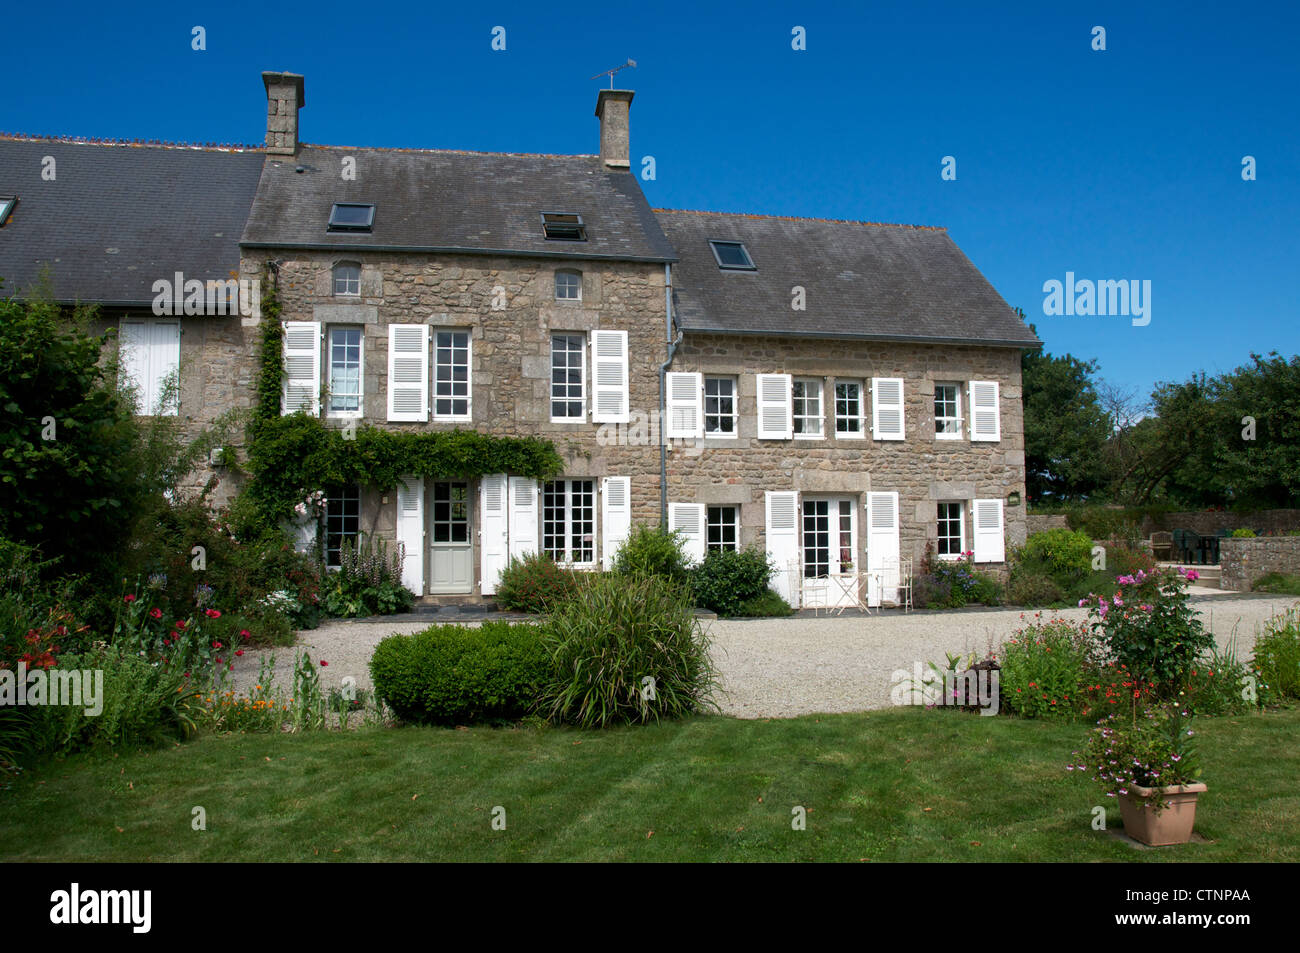 Maison en pierre de la péninsule de Cherbourg Normandie France Banque D'Images